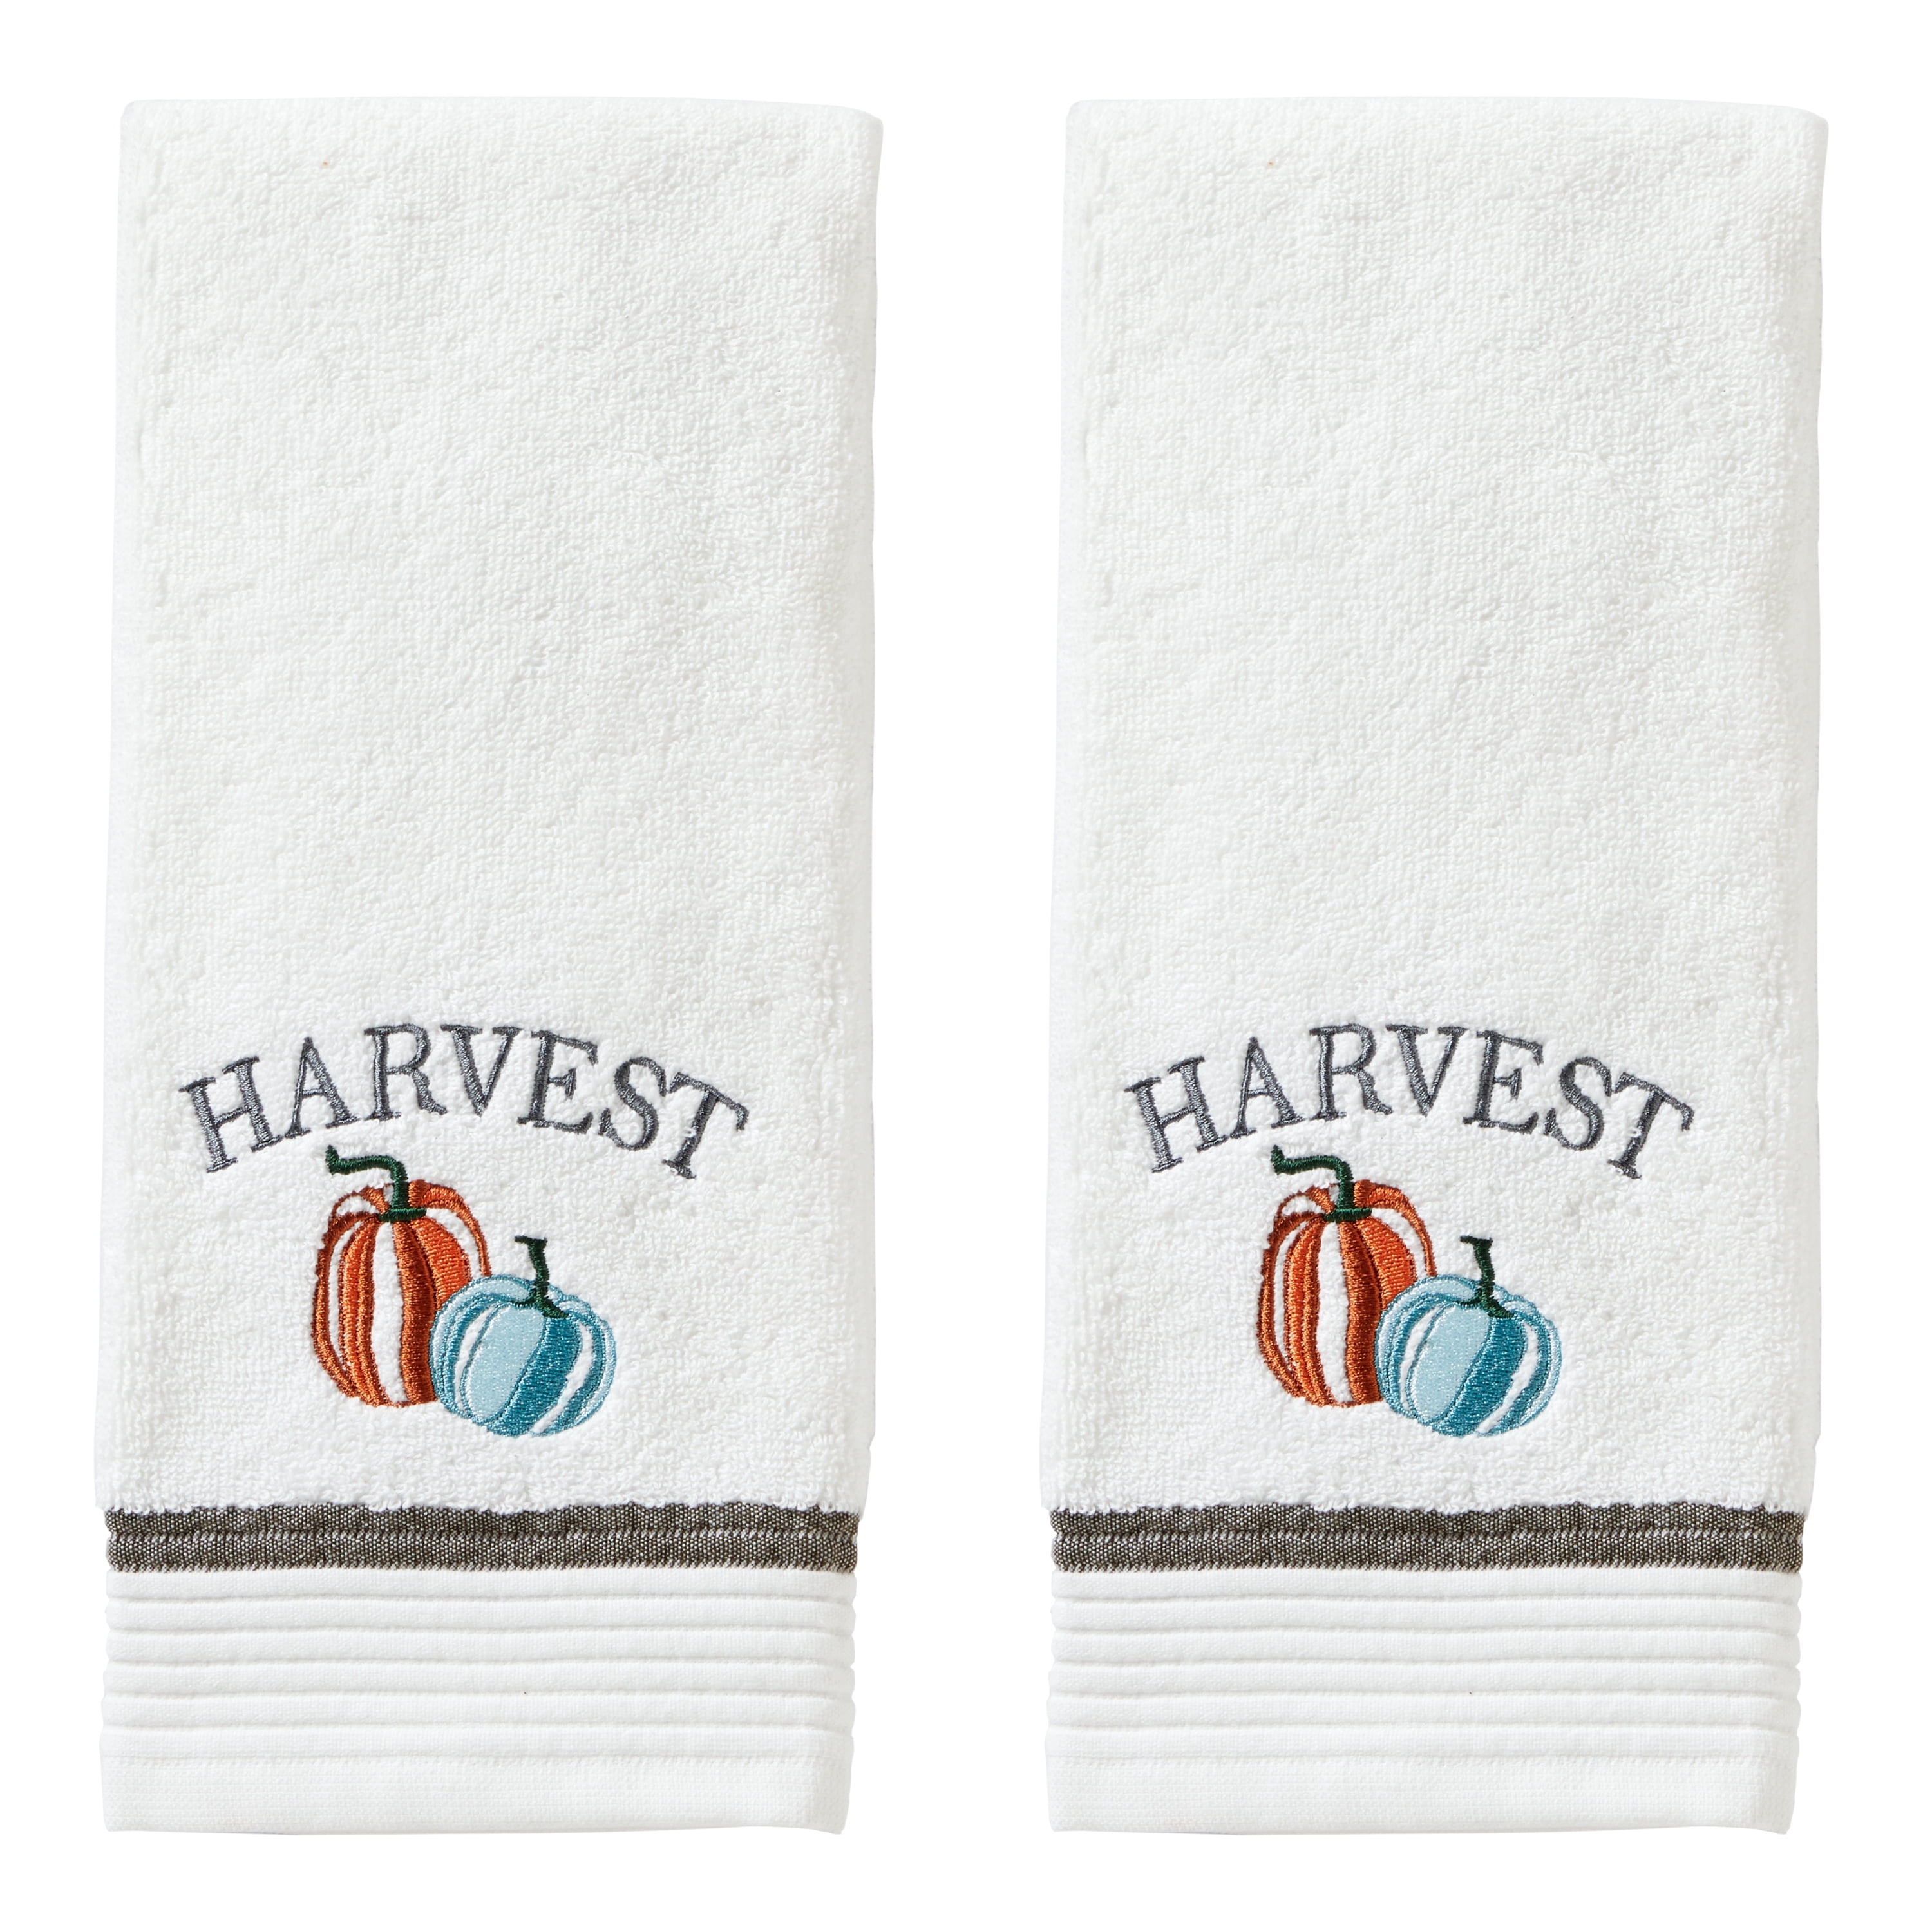  SKL Home Holidays 6-Piece Hand Towel Set, Assorted 6